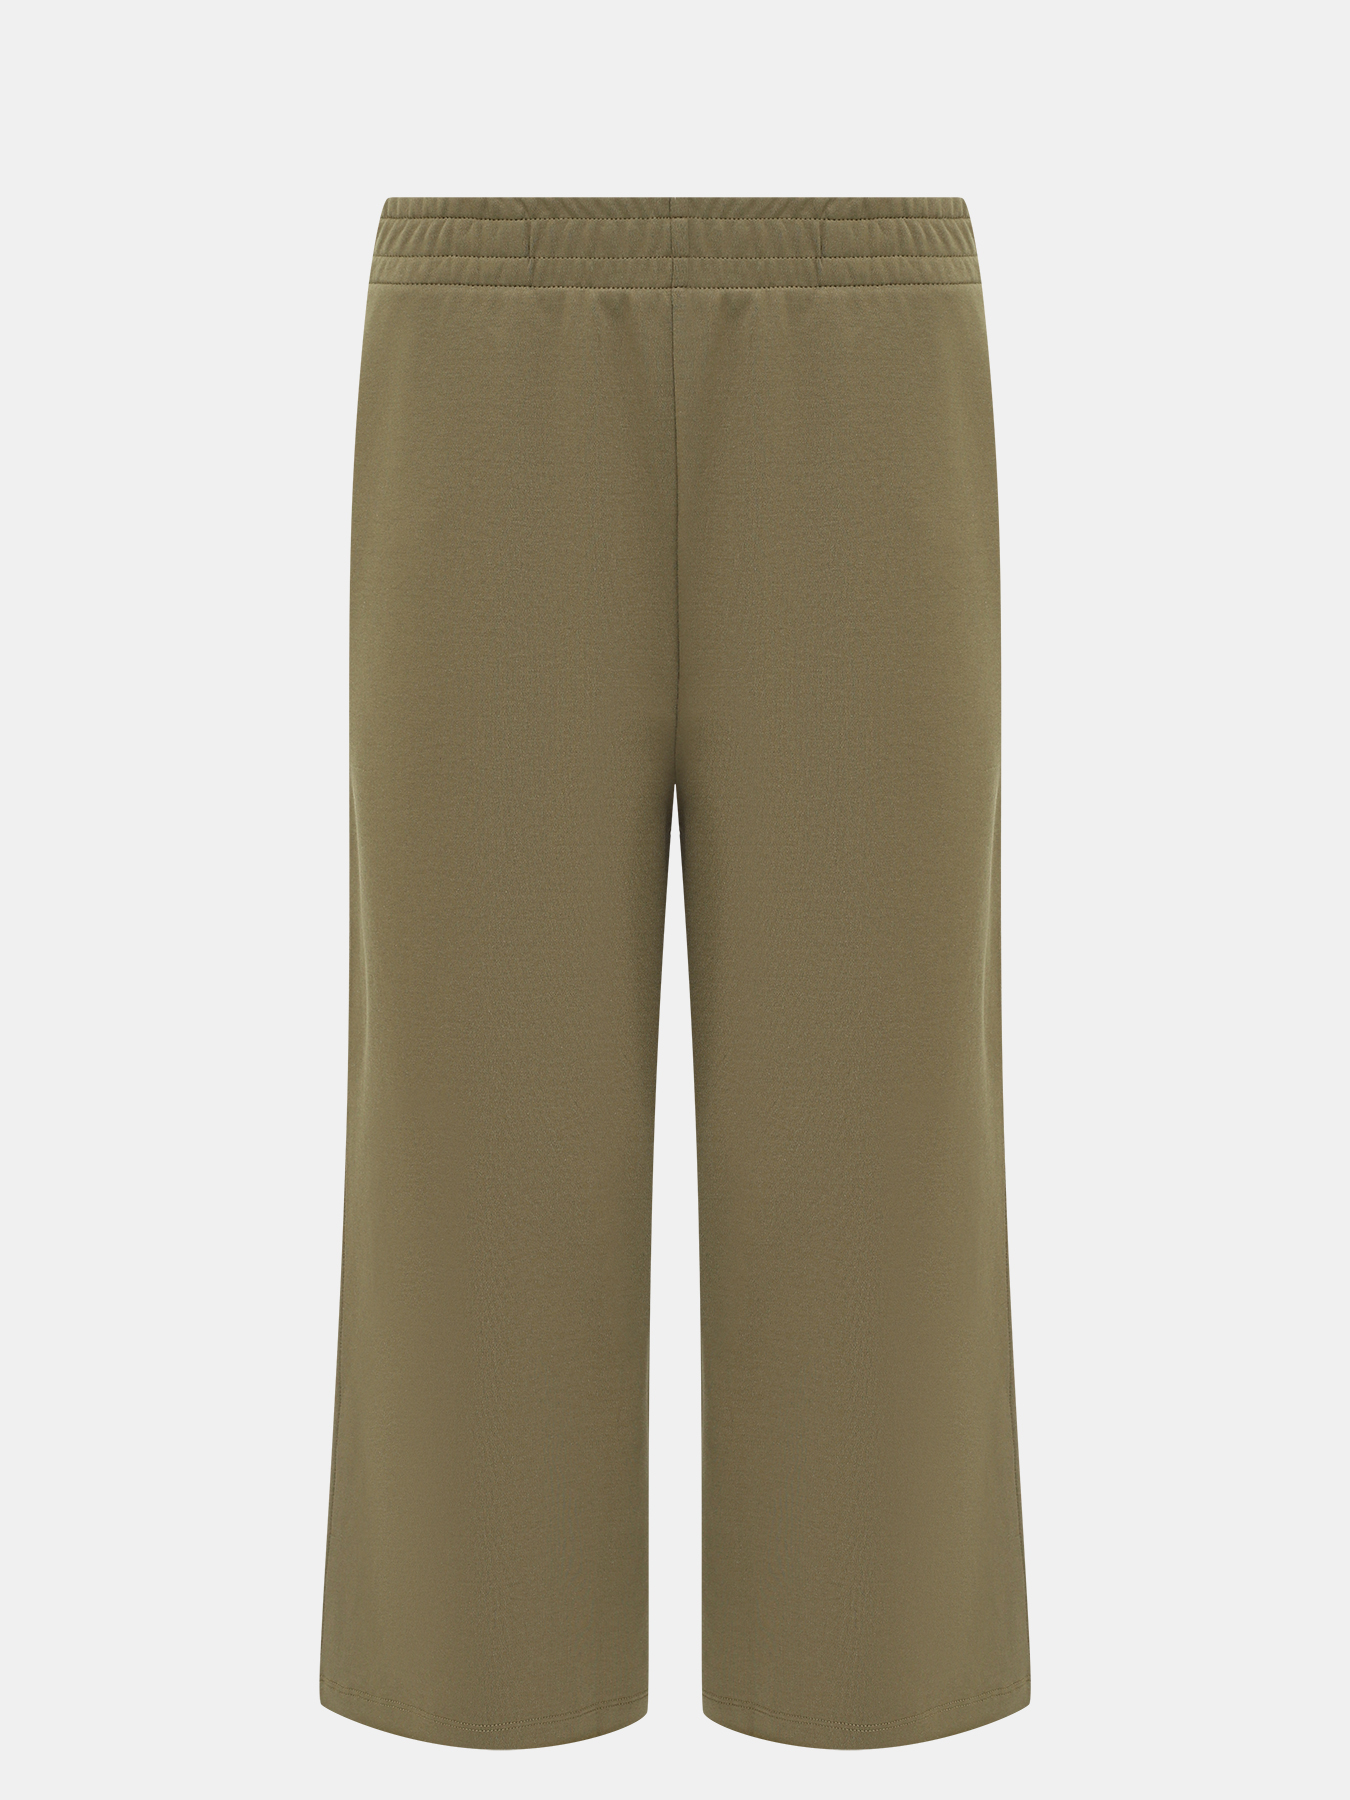 Спортивные брюки Enatea BOSS 414132-042, цвет хаки, размер 42-44 - фото 1